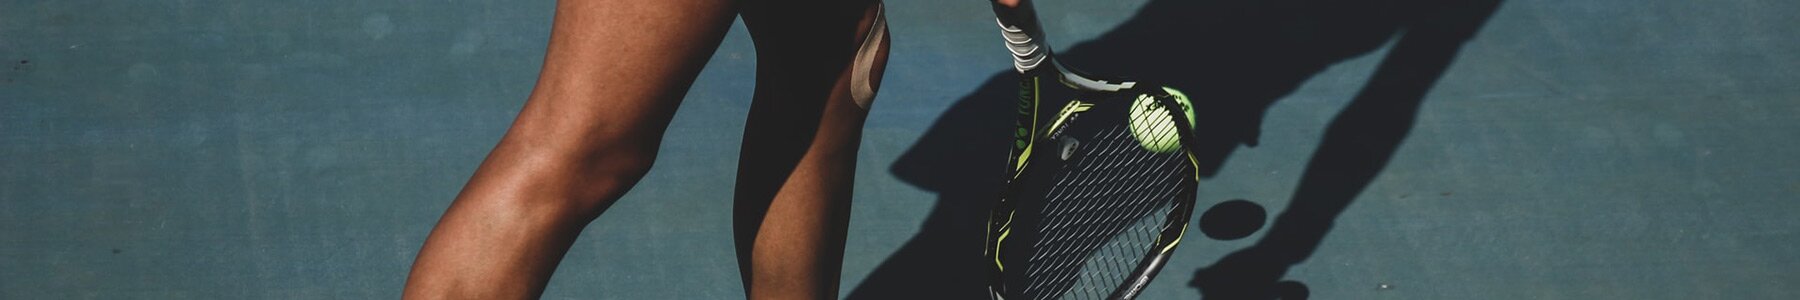 Je nieuwste Nike tennis outfit vind je bij Delsport 